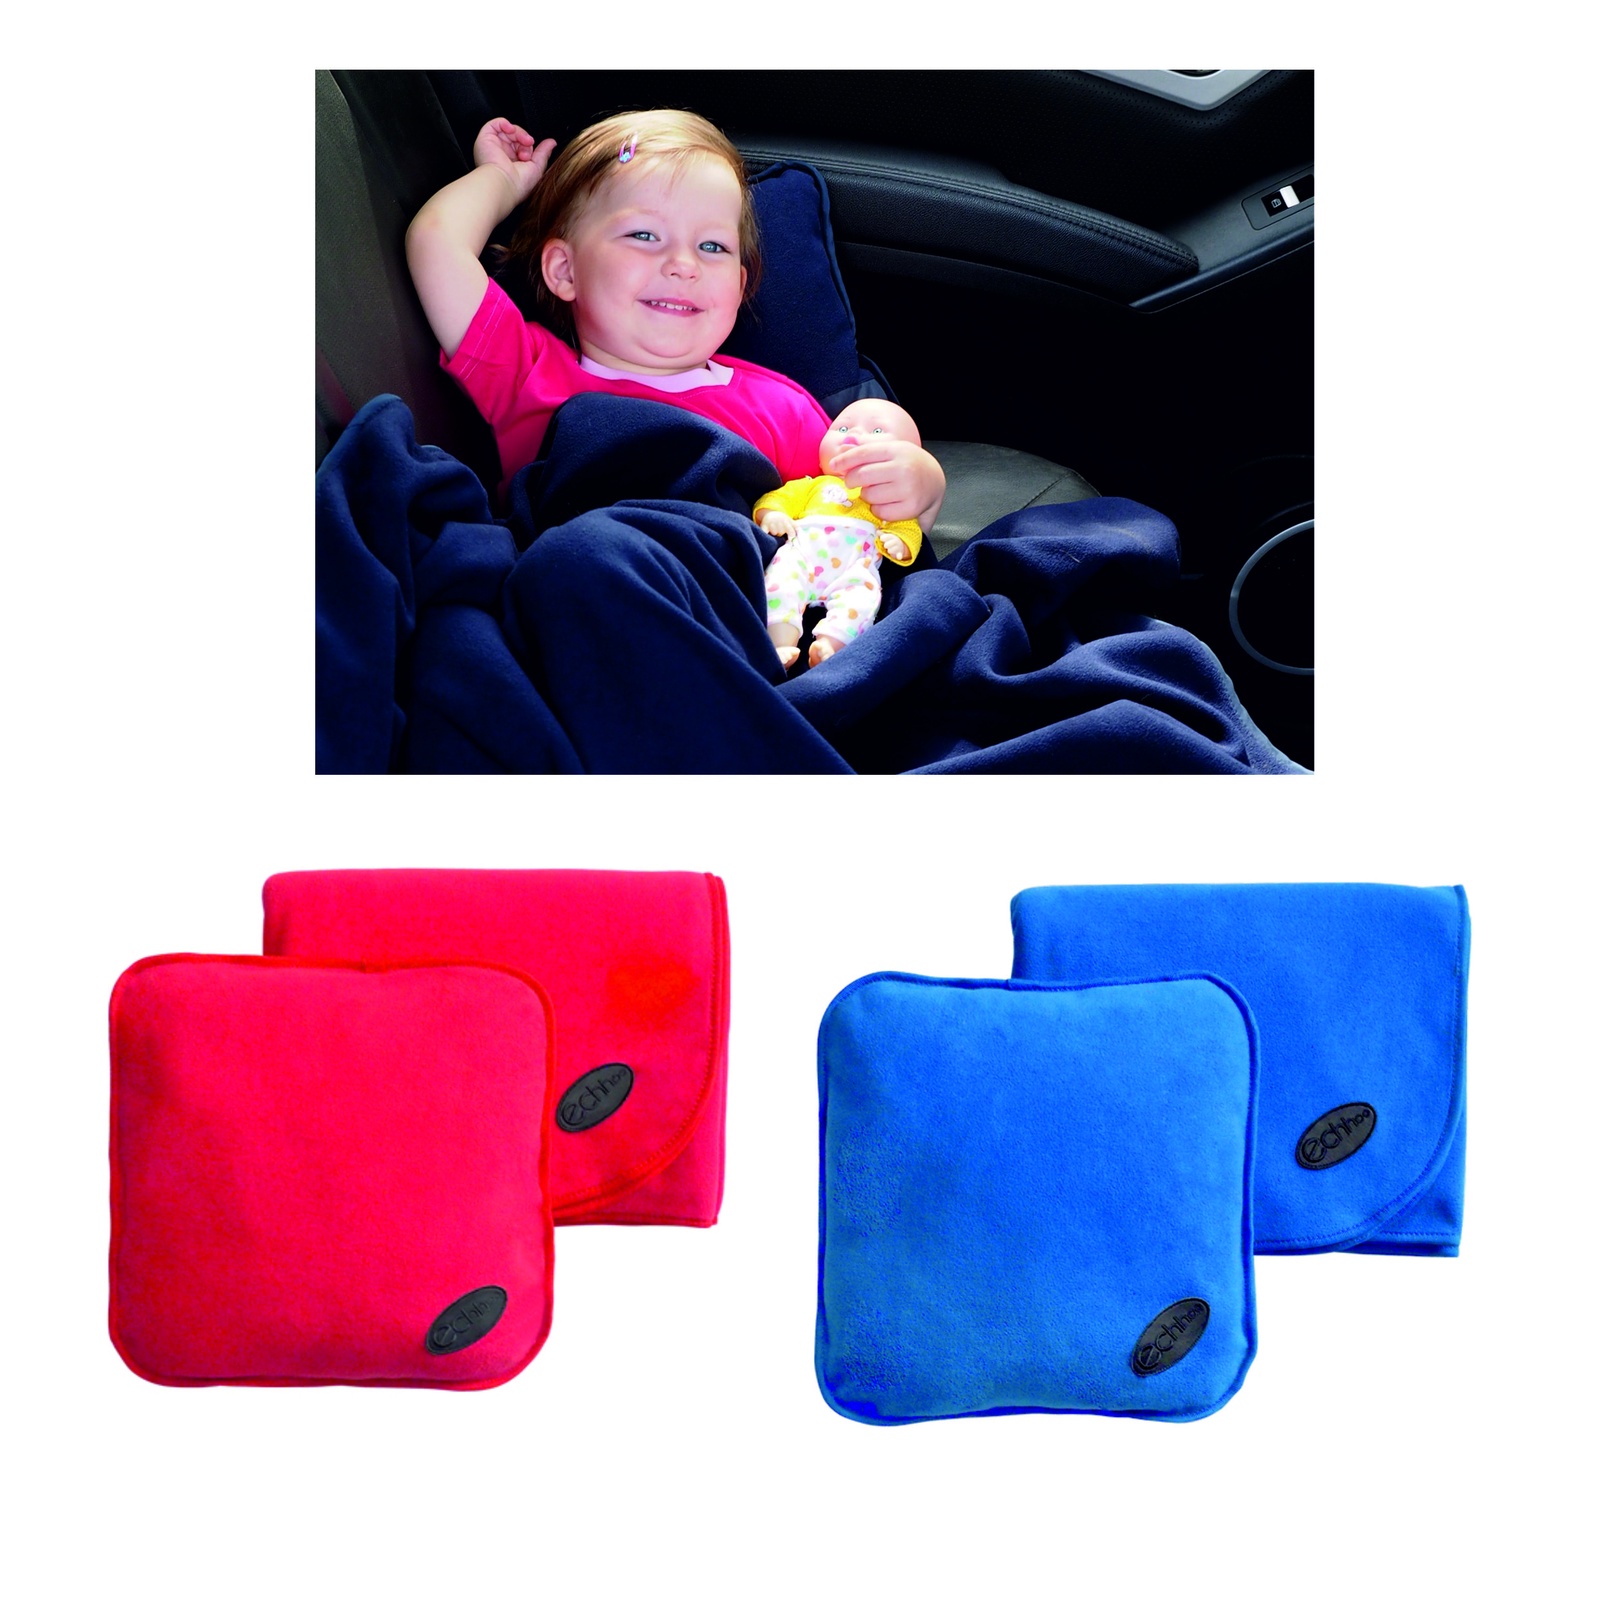 фото Подарочный набор автолюбителю ECHHOO Набор автомобильный детский (подушка и плед)-2, красный